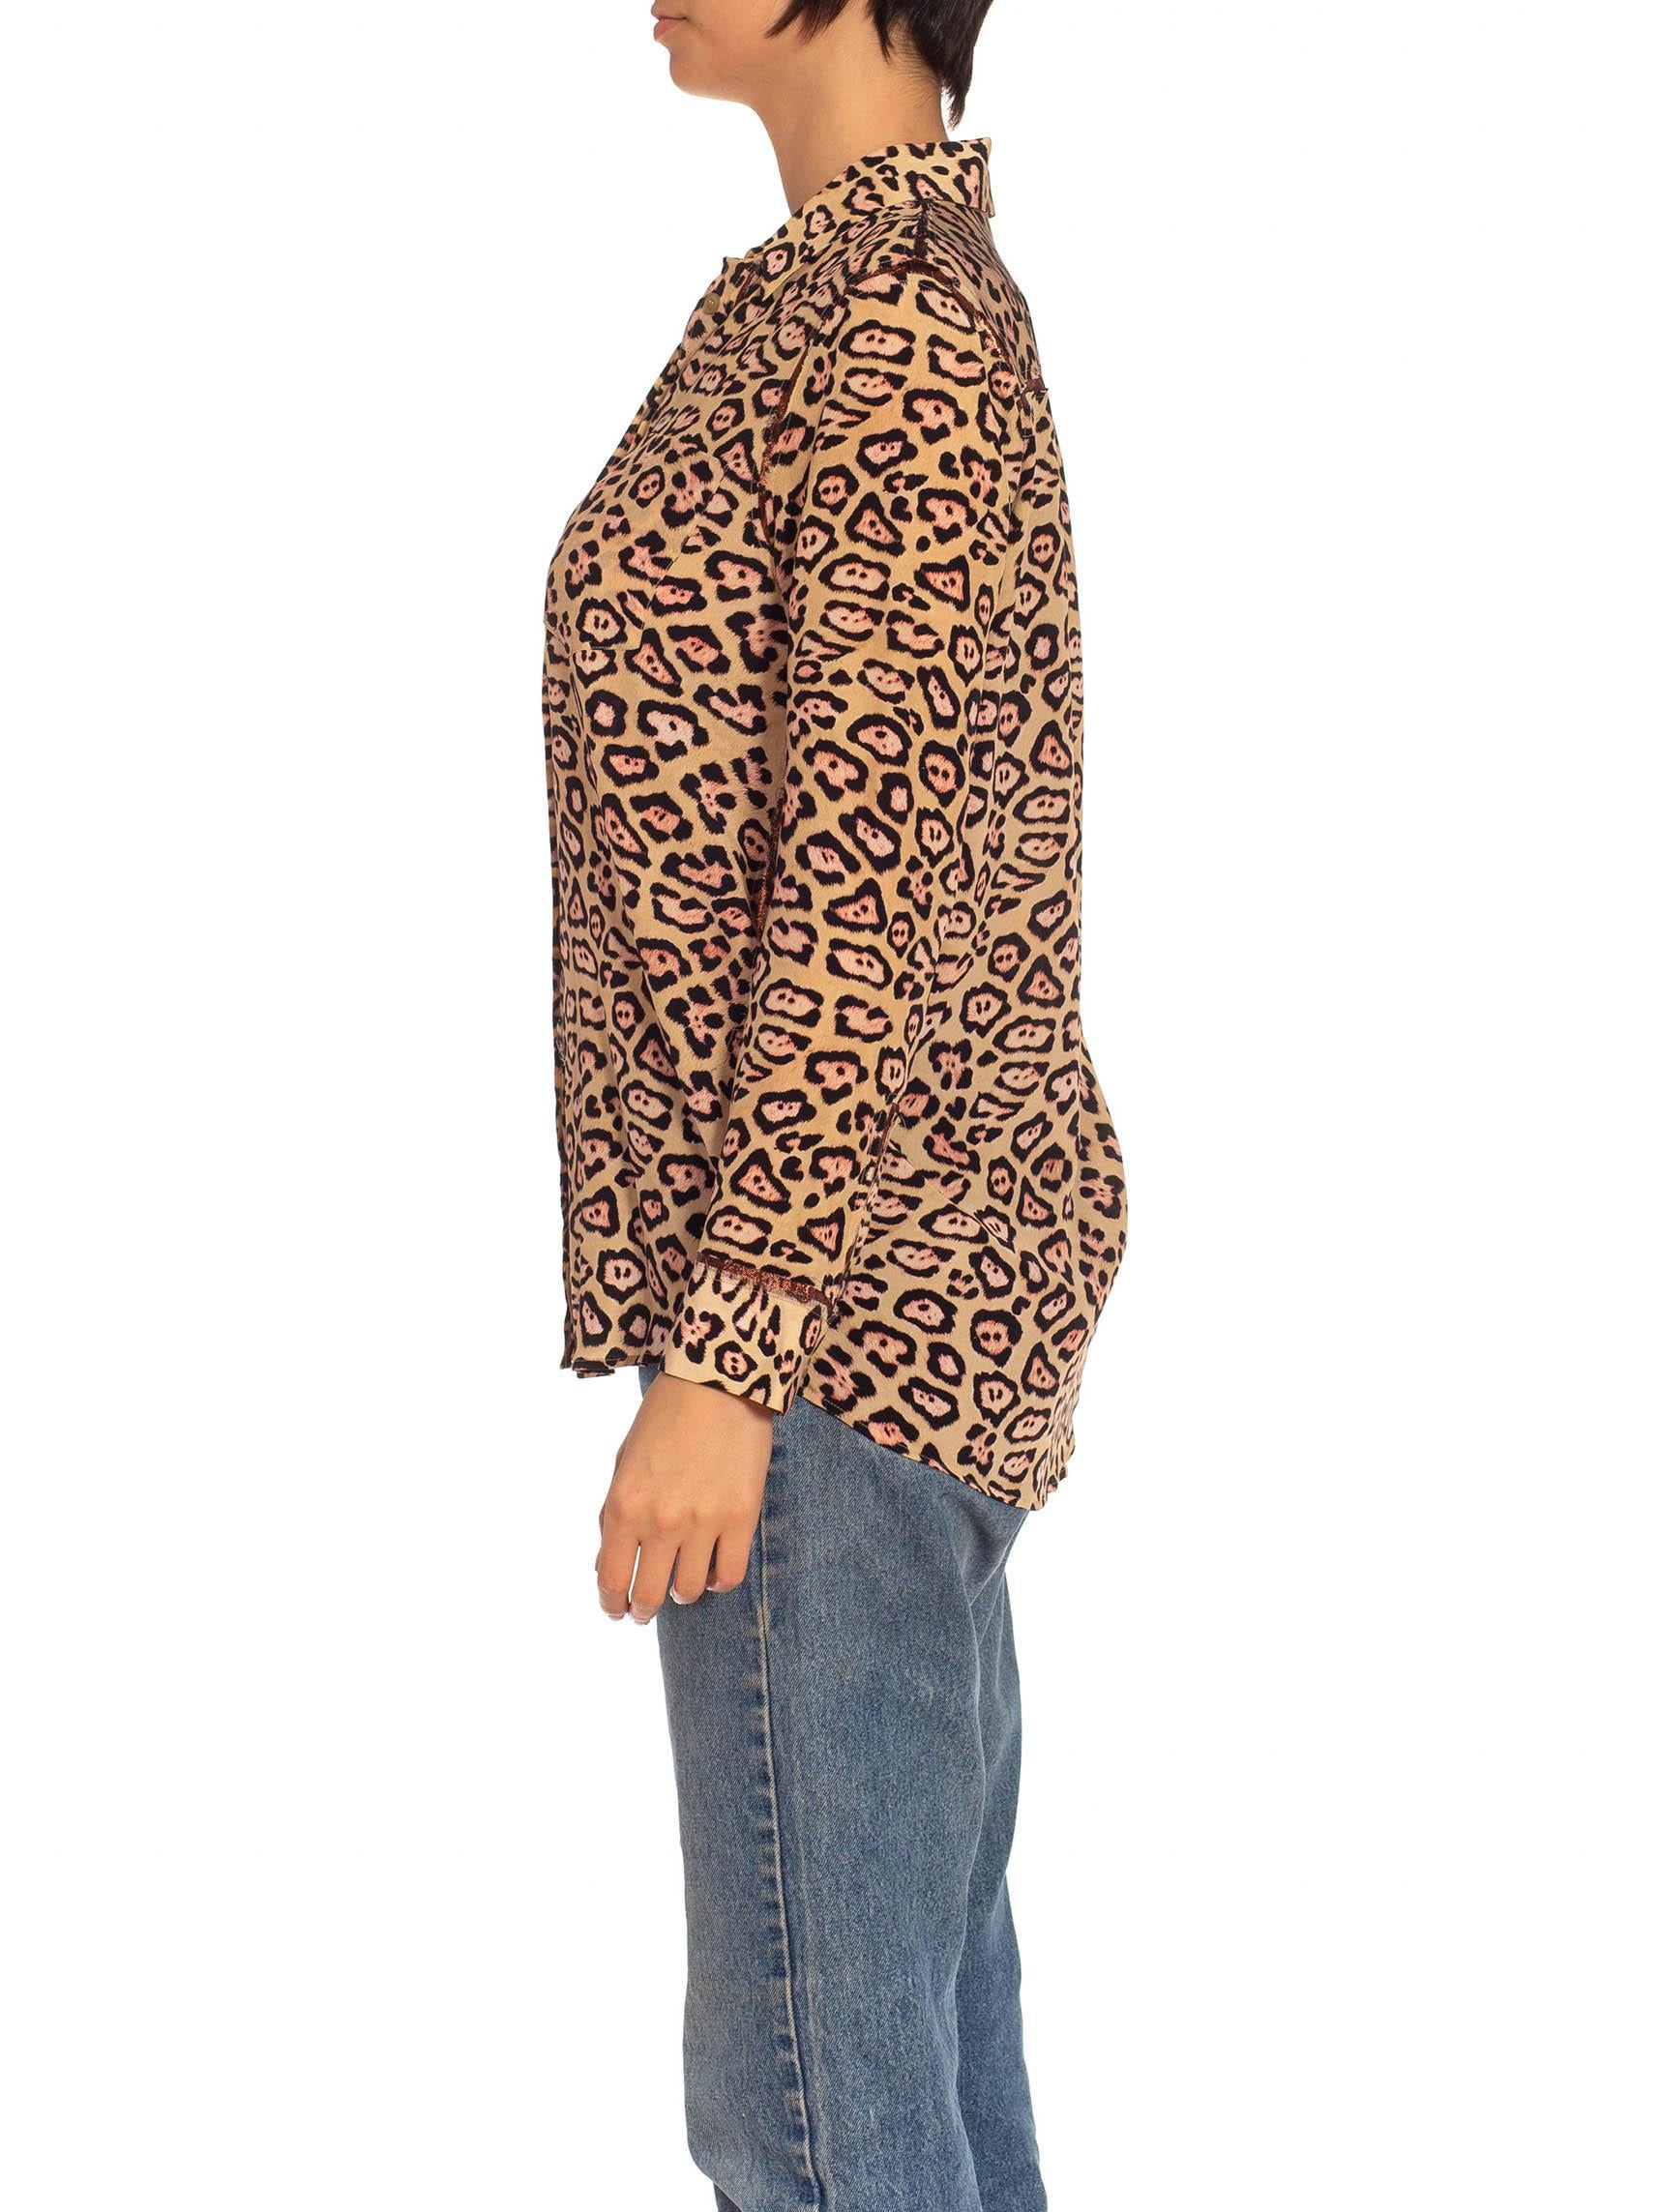 chemise GIVENCHY 2010S en soie marron et feu imprimé léopard avec passementerie métallique